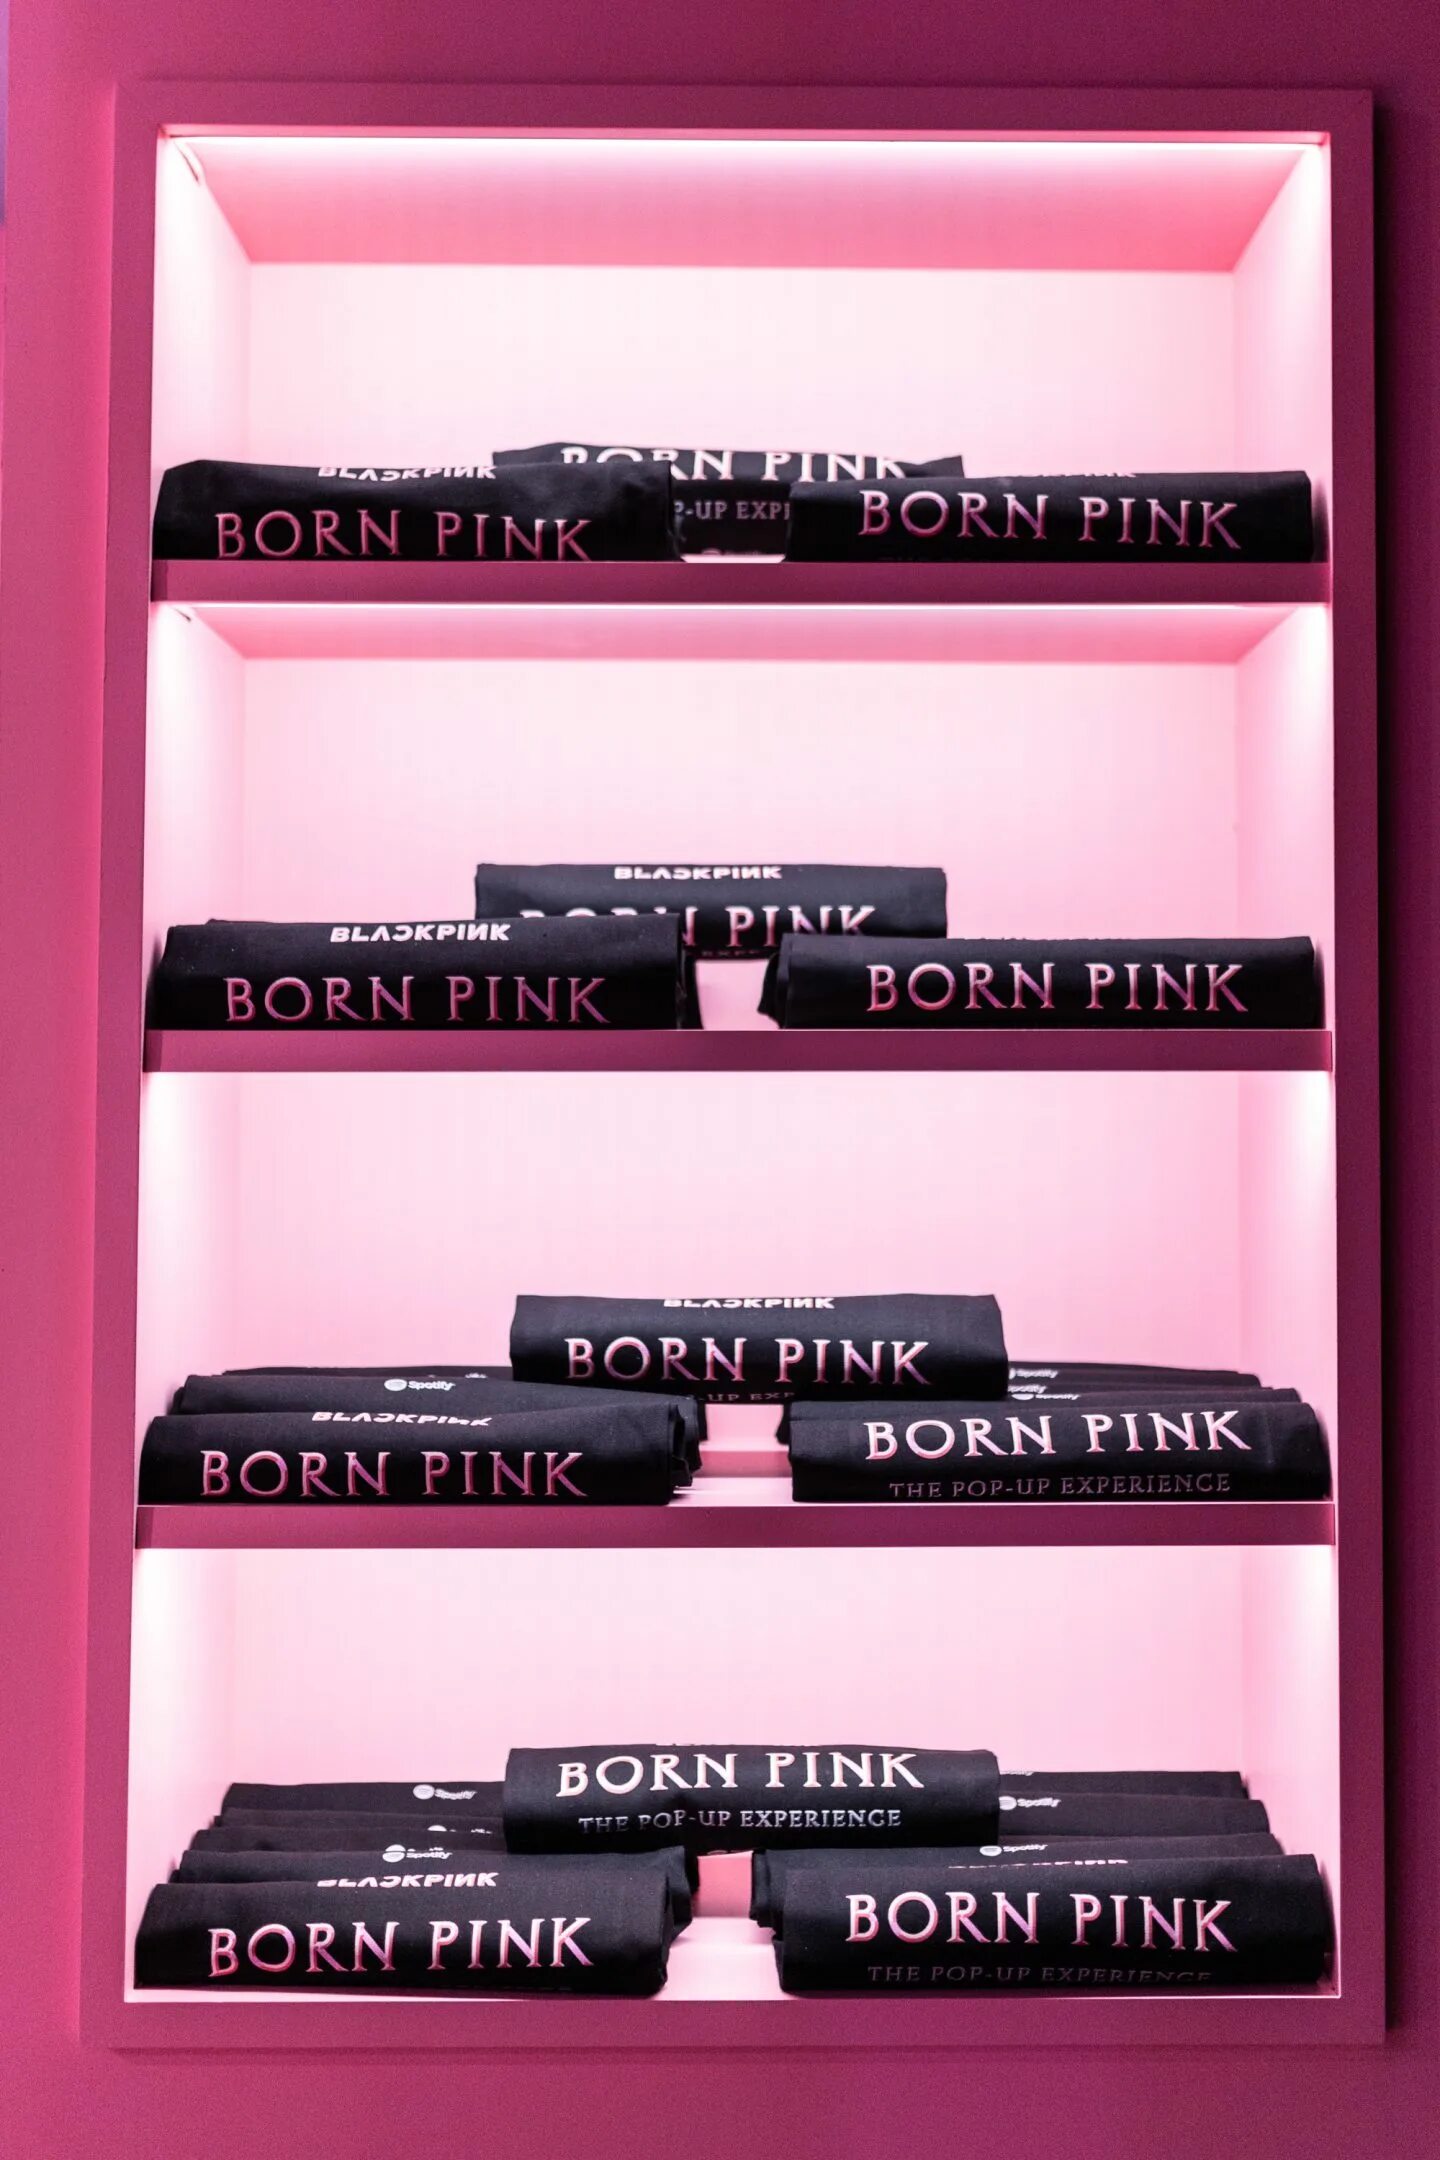 Борн Пинк. Борн Пинк альбом. Born Pink обложка. Наполнение born Pink.